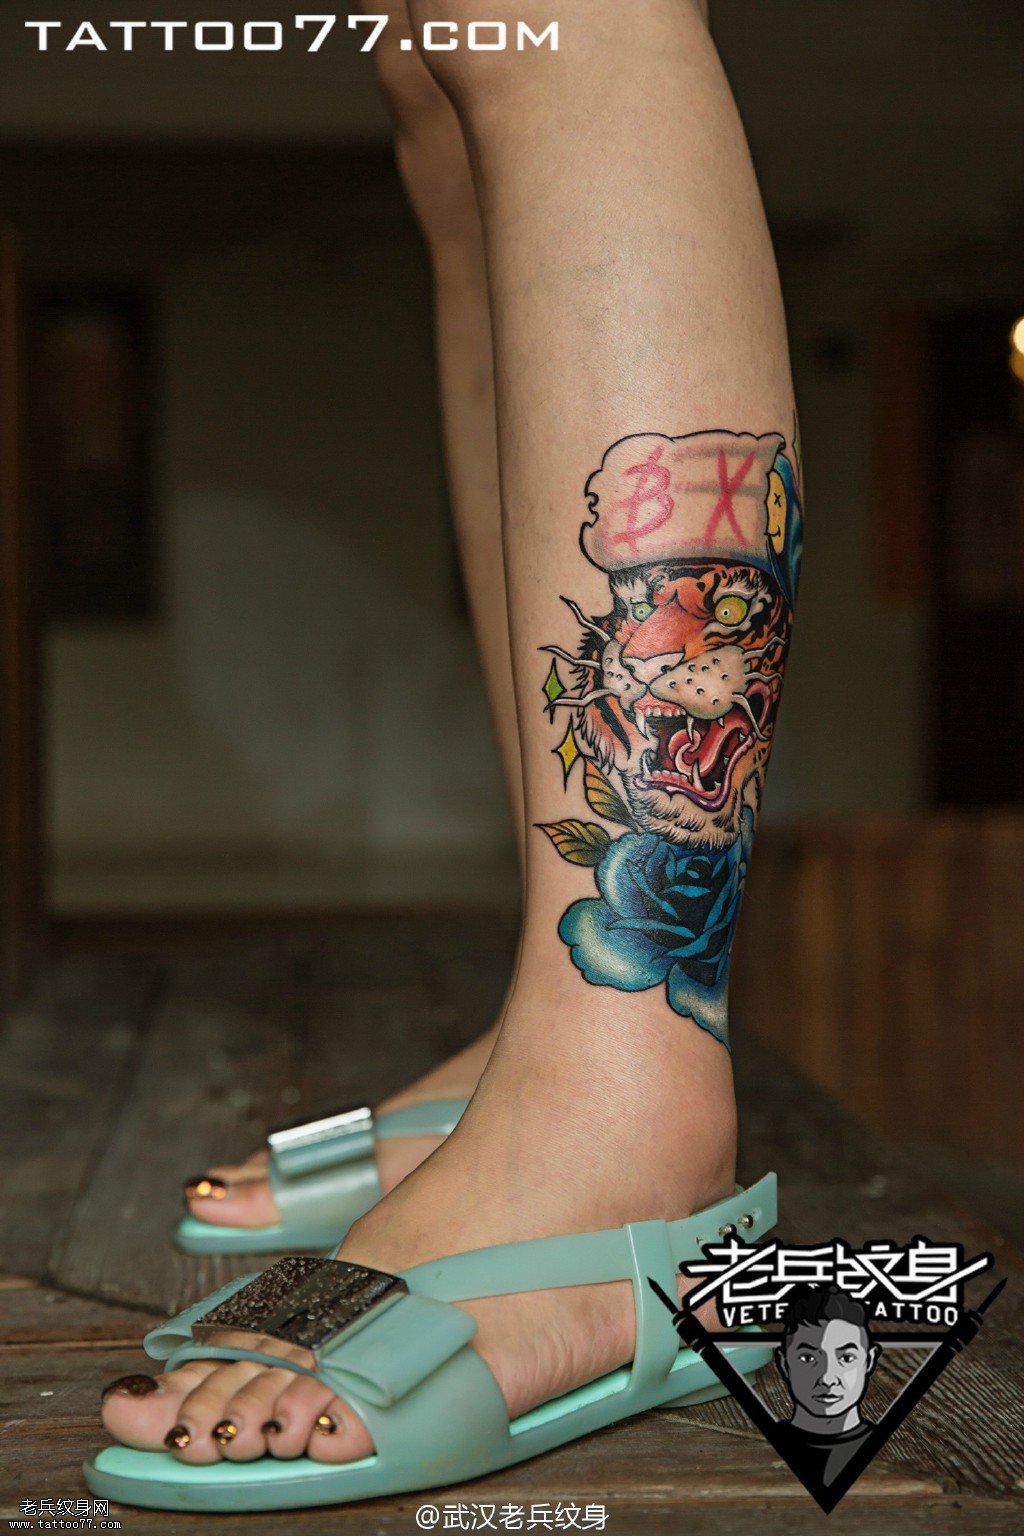 小腿老虎玫瑰花纹身图案作品遮盖旧纹身